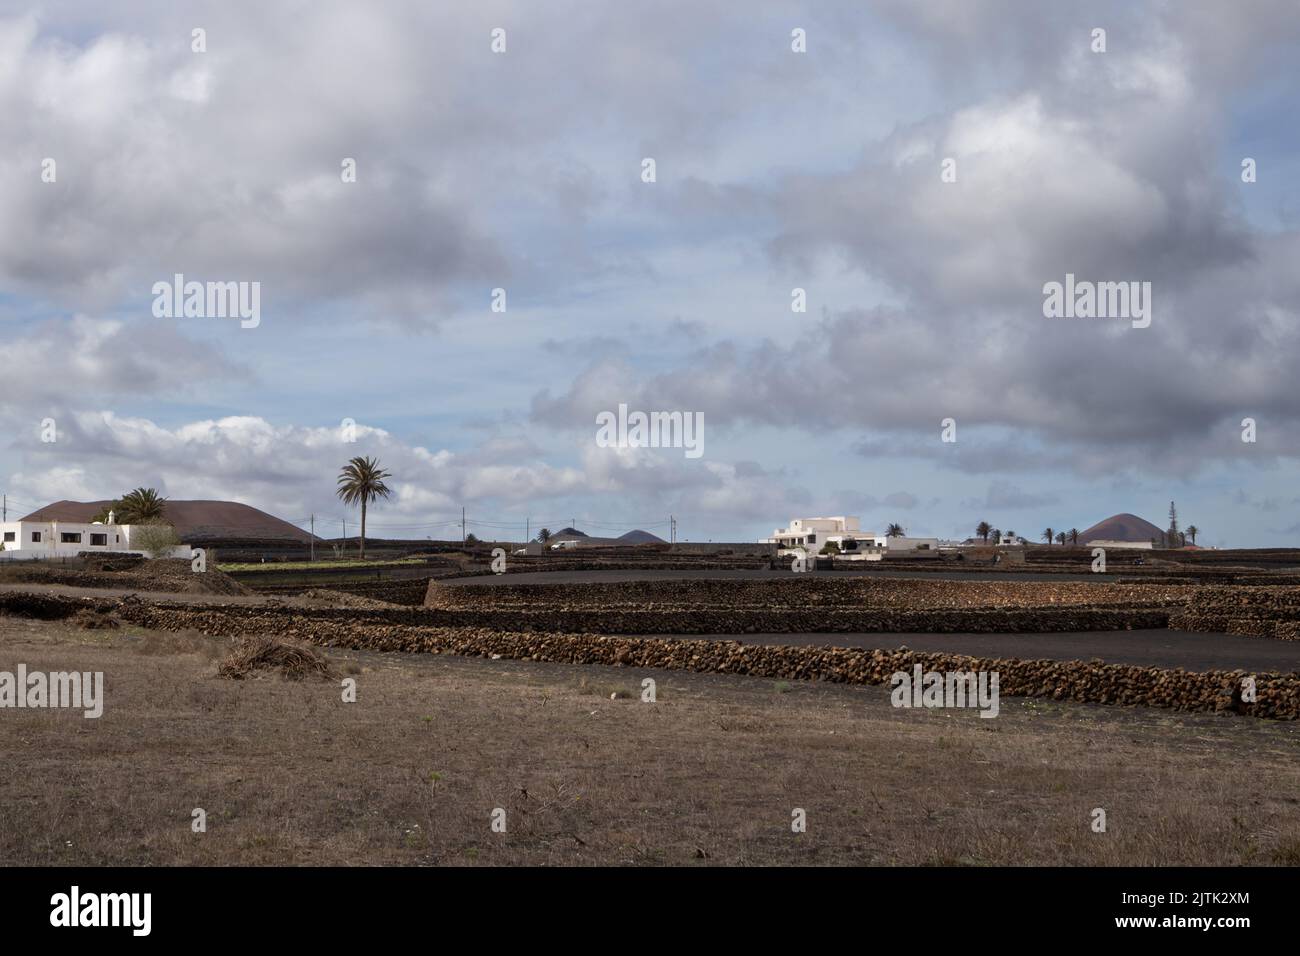 Kleine Felder mit einem schwarzen trockenen Boden, von Steinen geteilt. Weiße Häuser in einem einheitlichen lokalen Stil. Mehrere Palmen. Hügel im Hintergrund. Wolkiger Himmel. Stockfoto